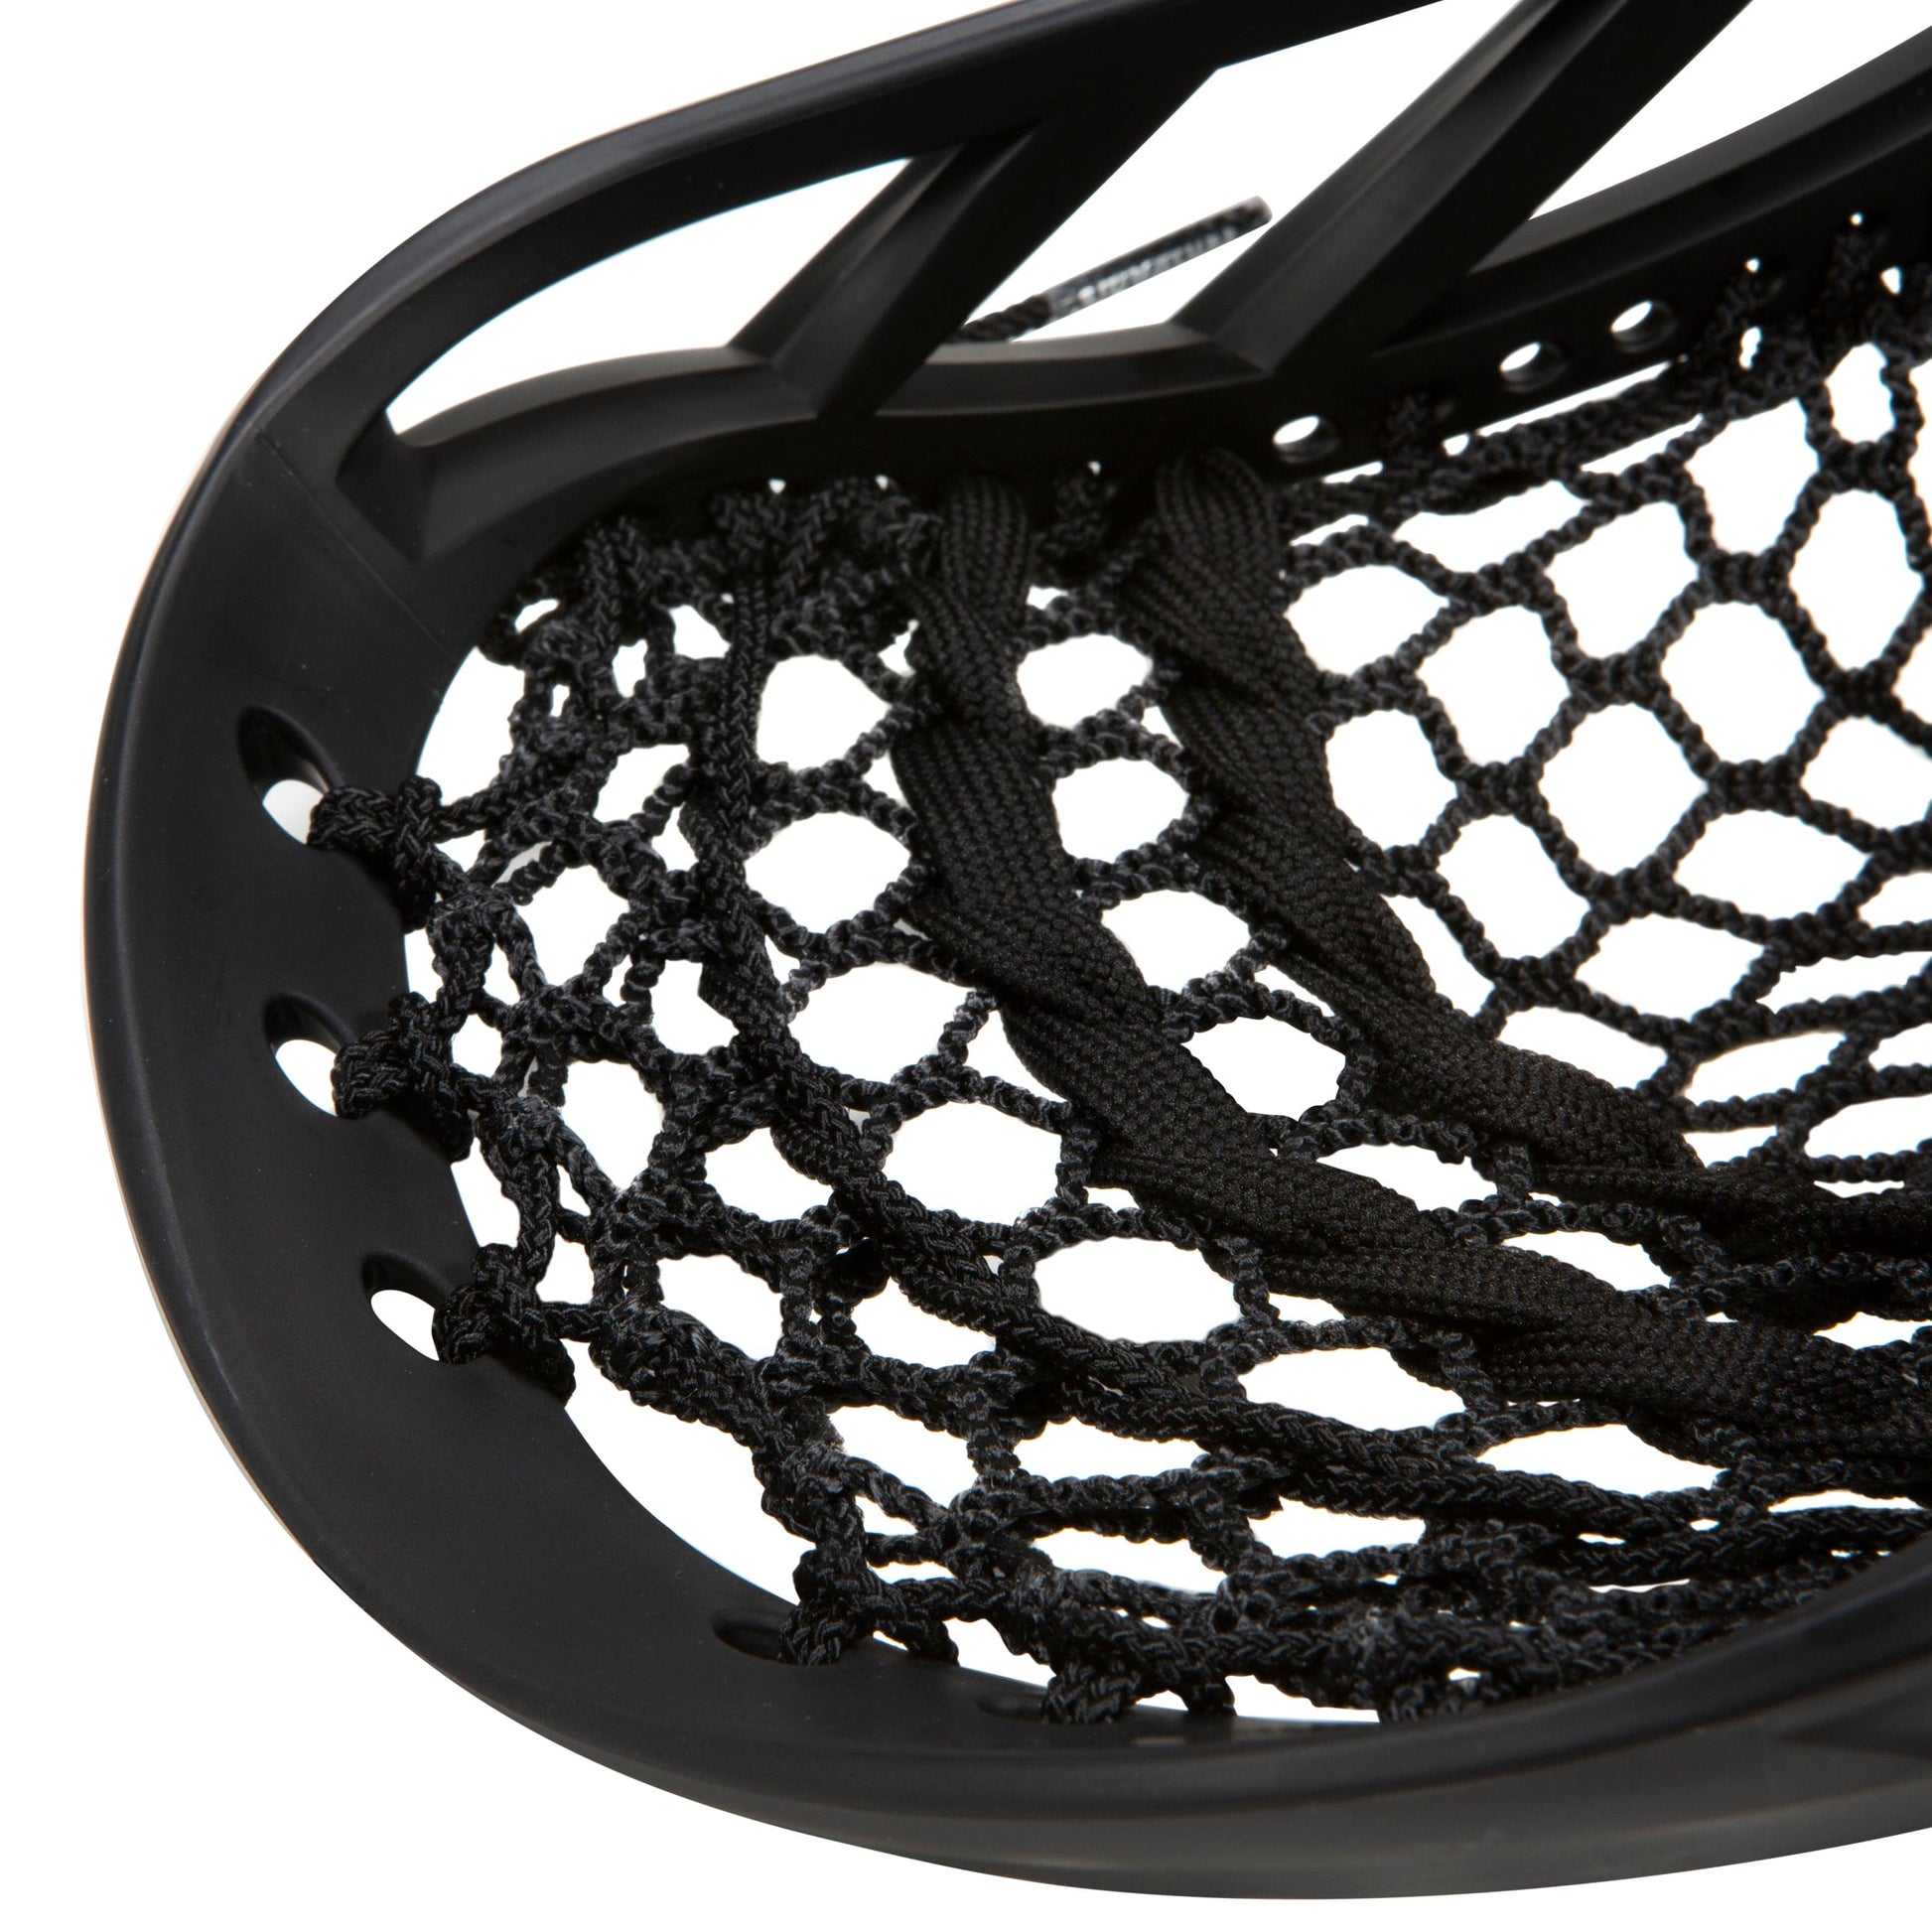 The Player Pro - Complete Defensive Lacrosse Stick for Men | Carbon Fiber Signature Lacrosse